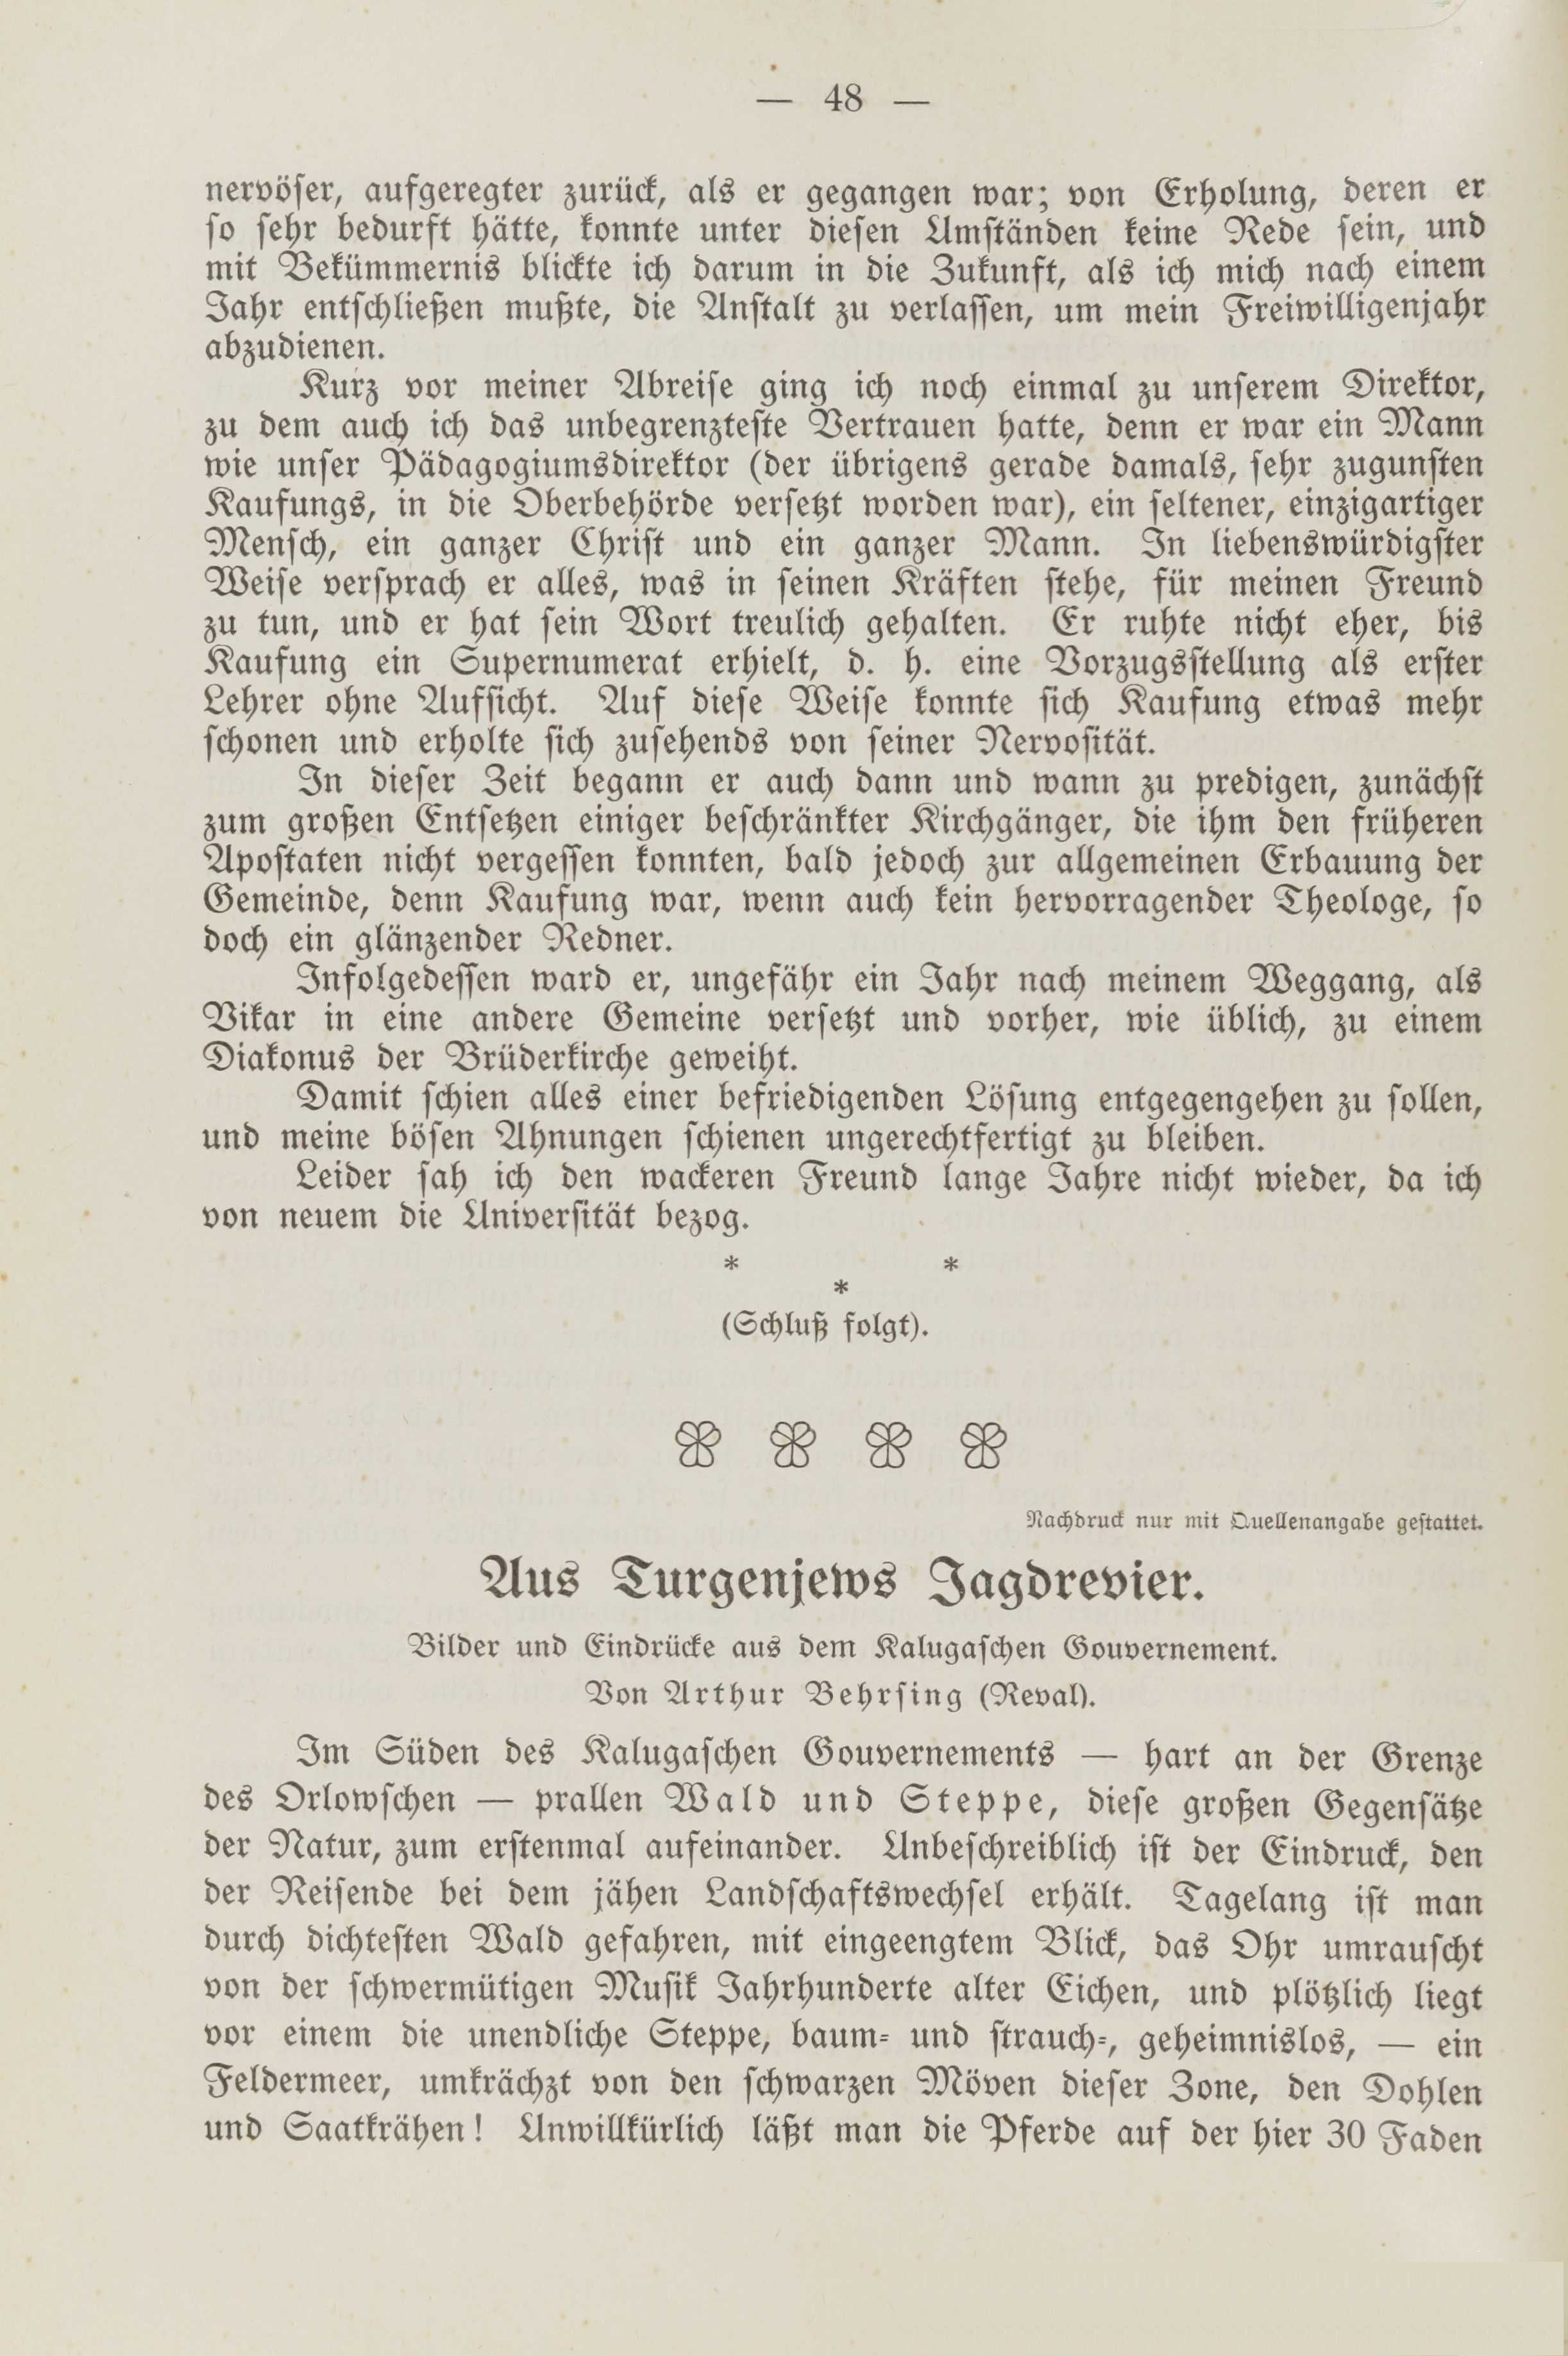 Deutsche Monatsschrift für Russland [2] (1913) | 52. (48) Haupttext